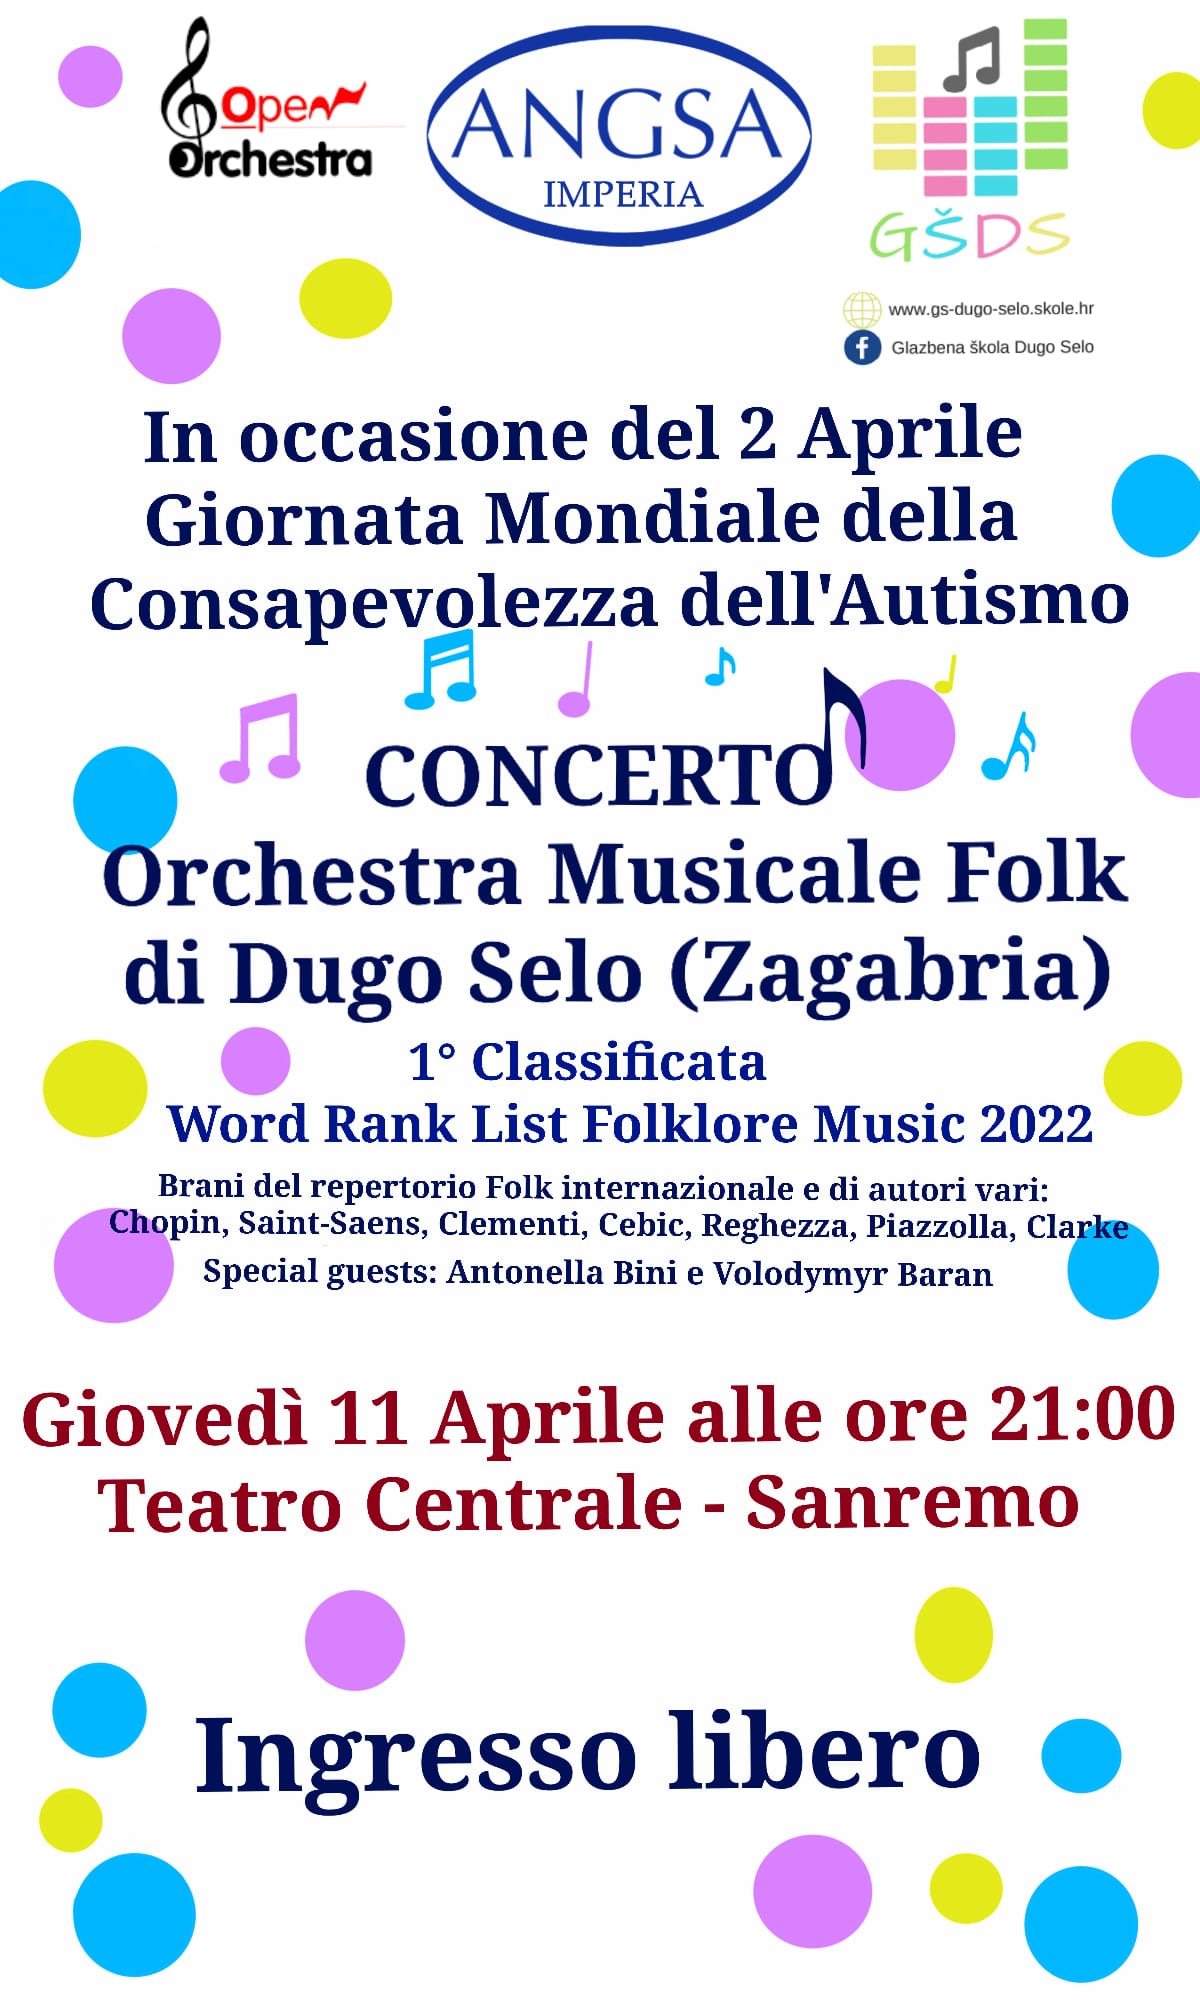  Concerto Orchestra Musicale Folk di Dugo Selo (Zagabria)